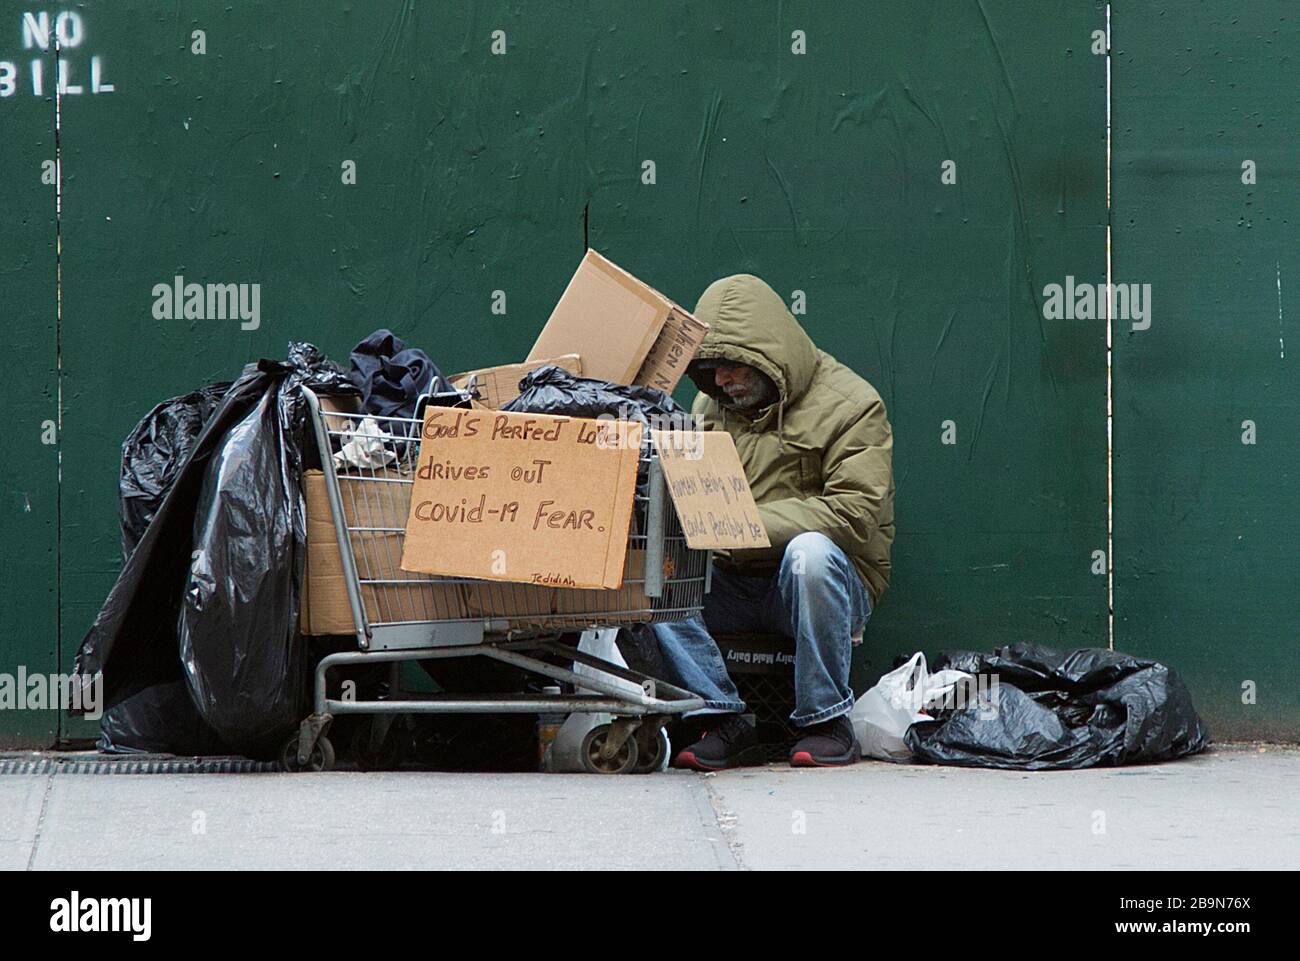 Un homme sans abri affiche un signe qui nous dit que seul l'amour de Dieu dissipera la peur causée par le coronavirus Covid-19. 5e Avenue, Midtown Manhattan, New York. Banque D'Images